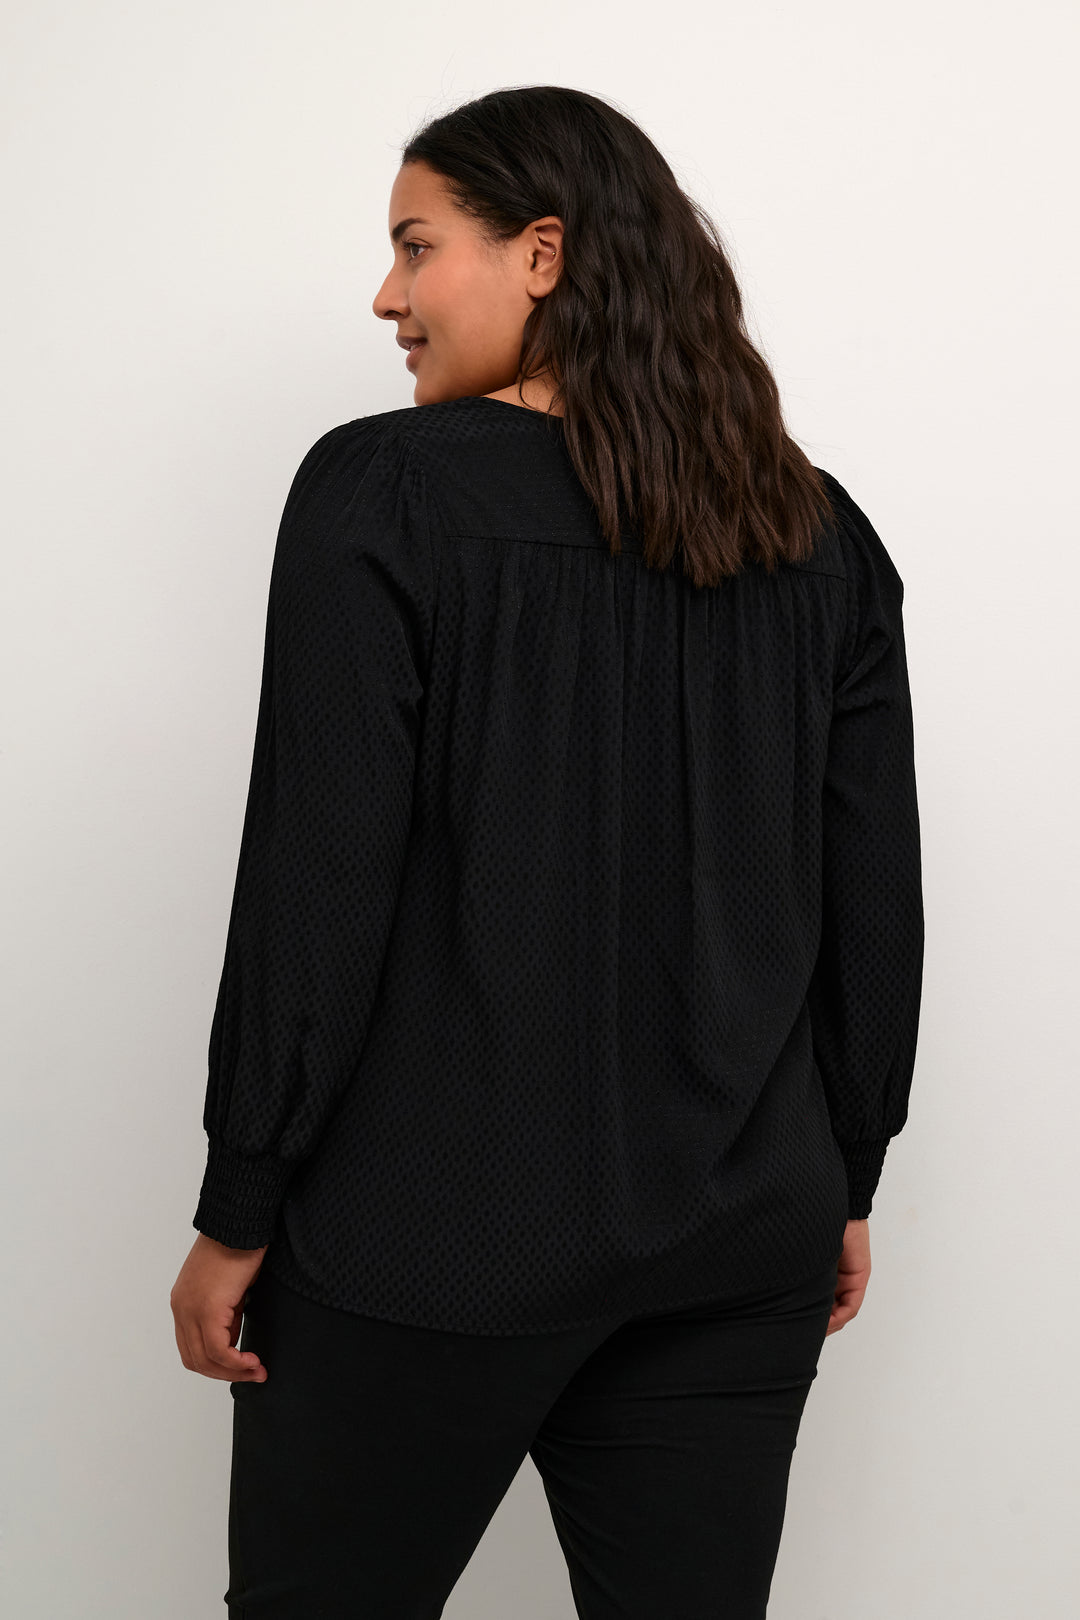 zwarte blouse met toon op toon print